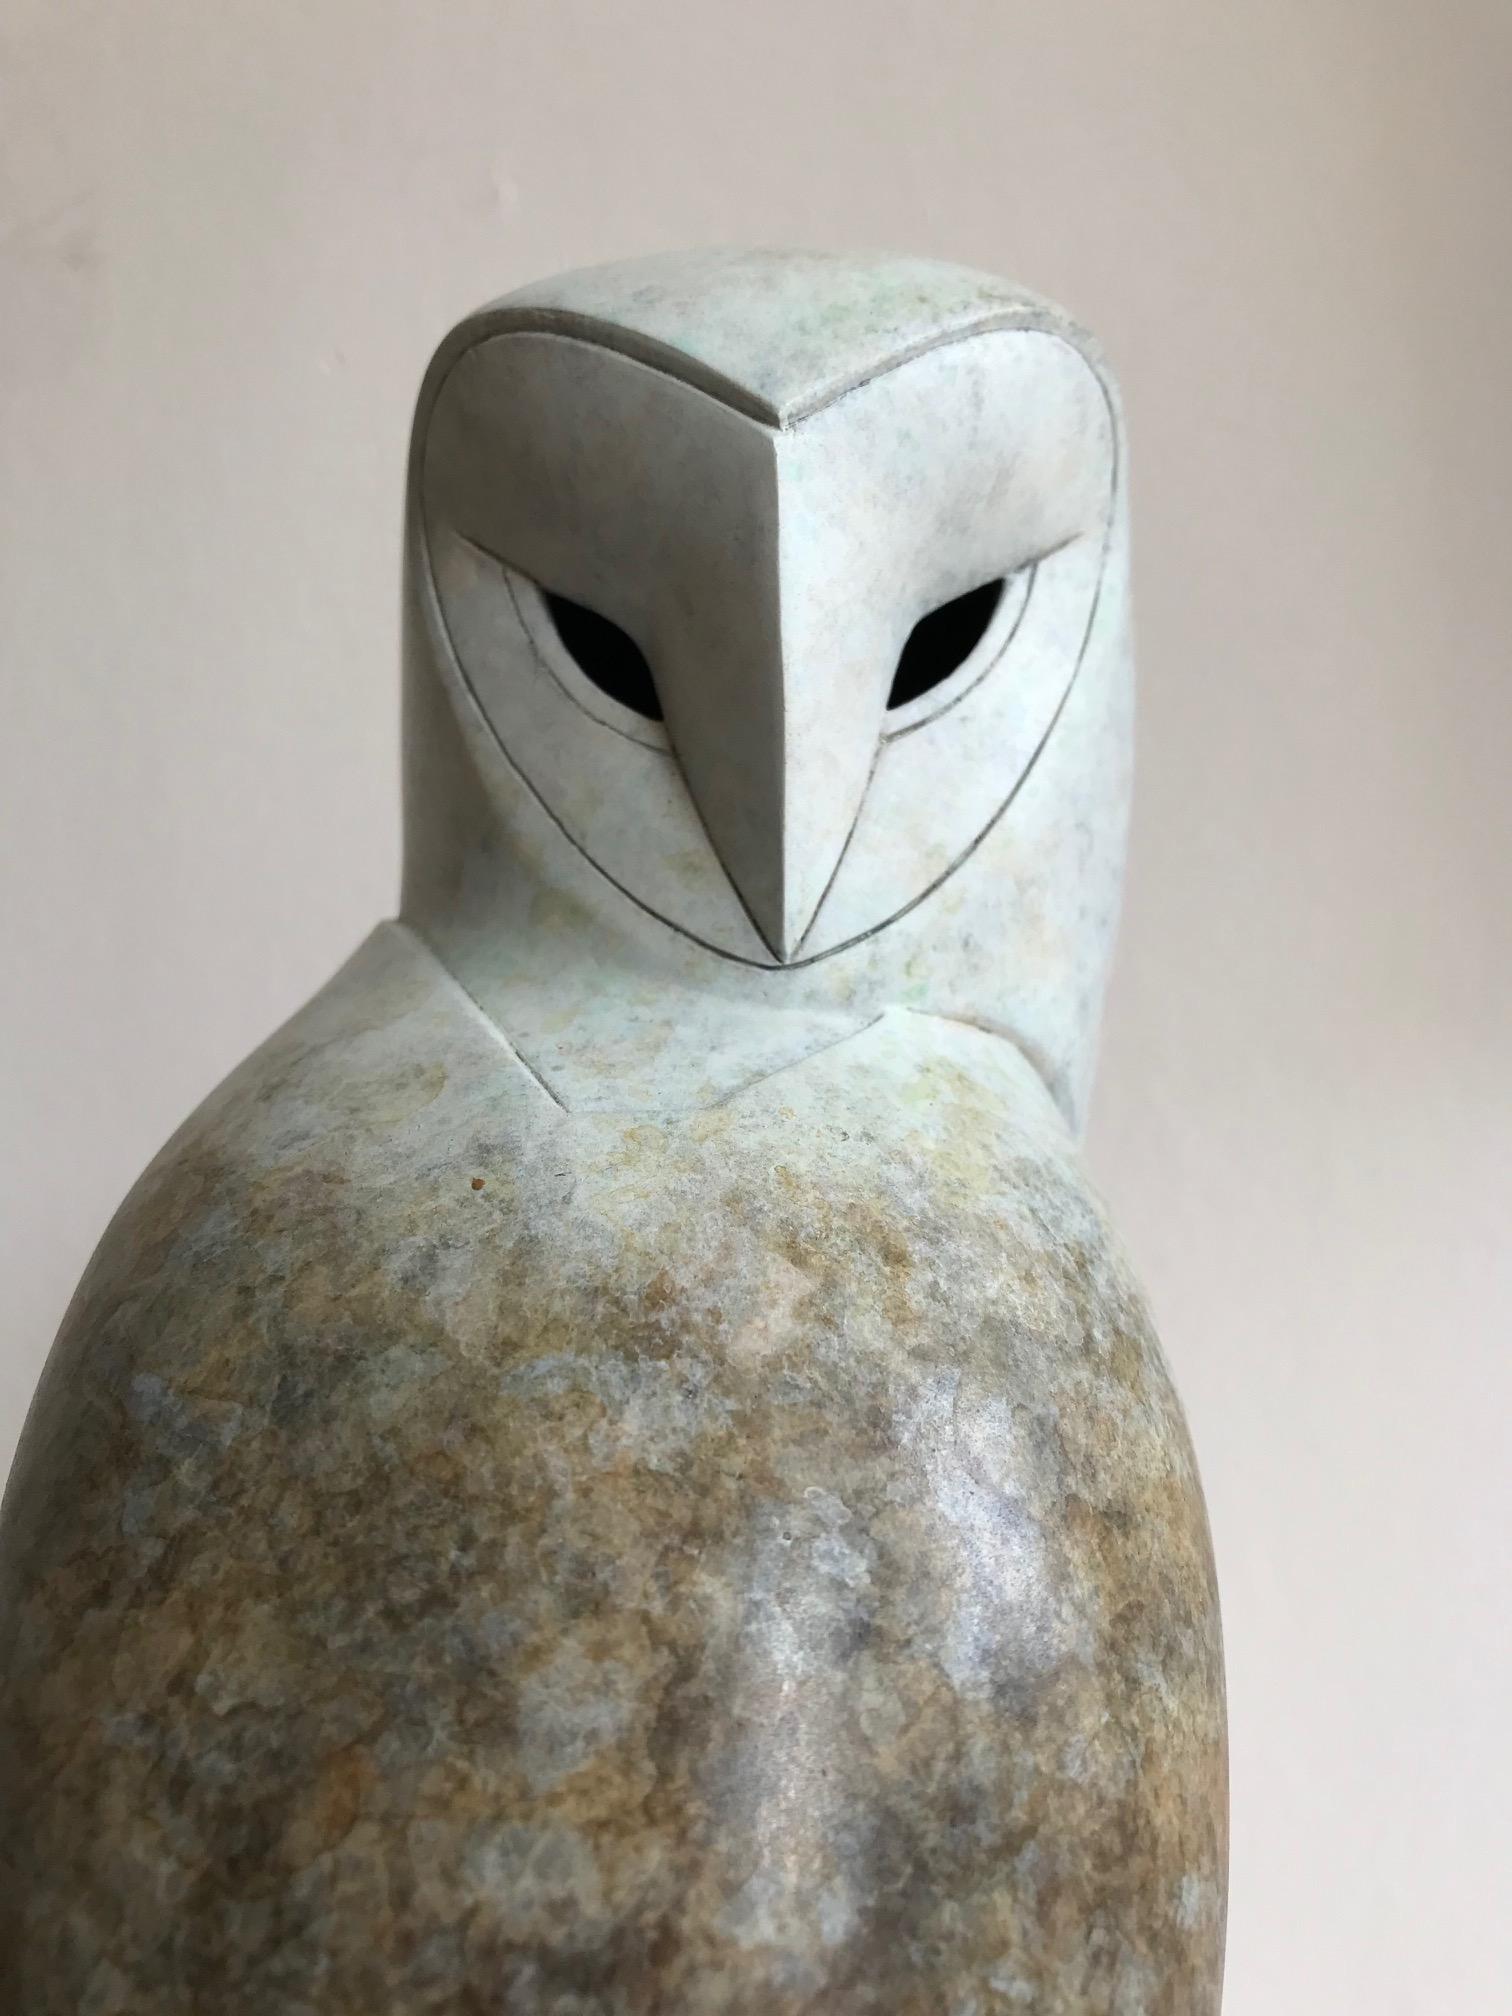 Le sculpteur britannique Anthony Theakston (1965), qui s'inspire de la forme et du mouvement des oiseaux, simplifie les oiseaux et omet de plus en plus de détails jusqu'à ce qu'il ne reste que l'essence de l'animal. Les oiseaux stylisés sont réduits